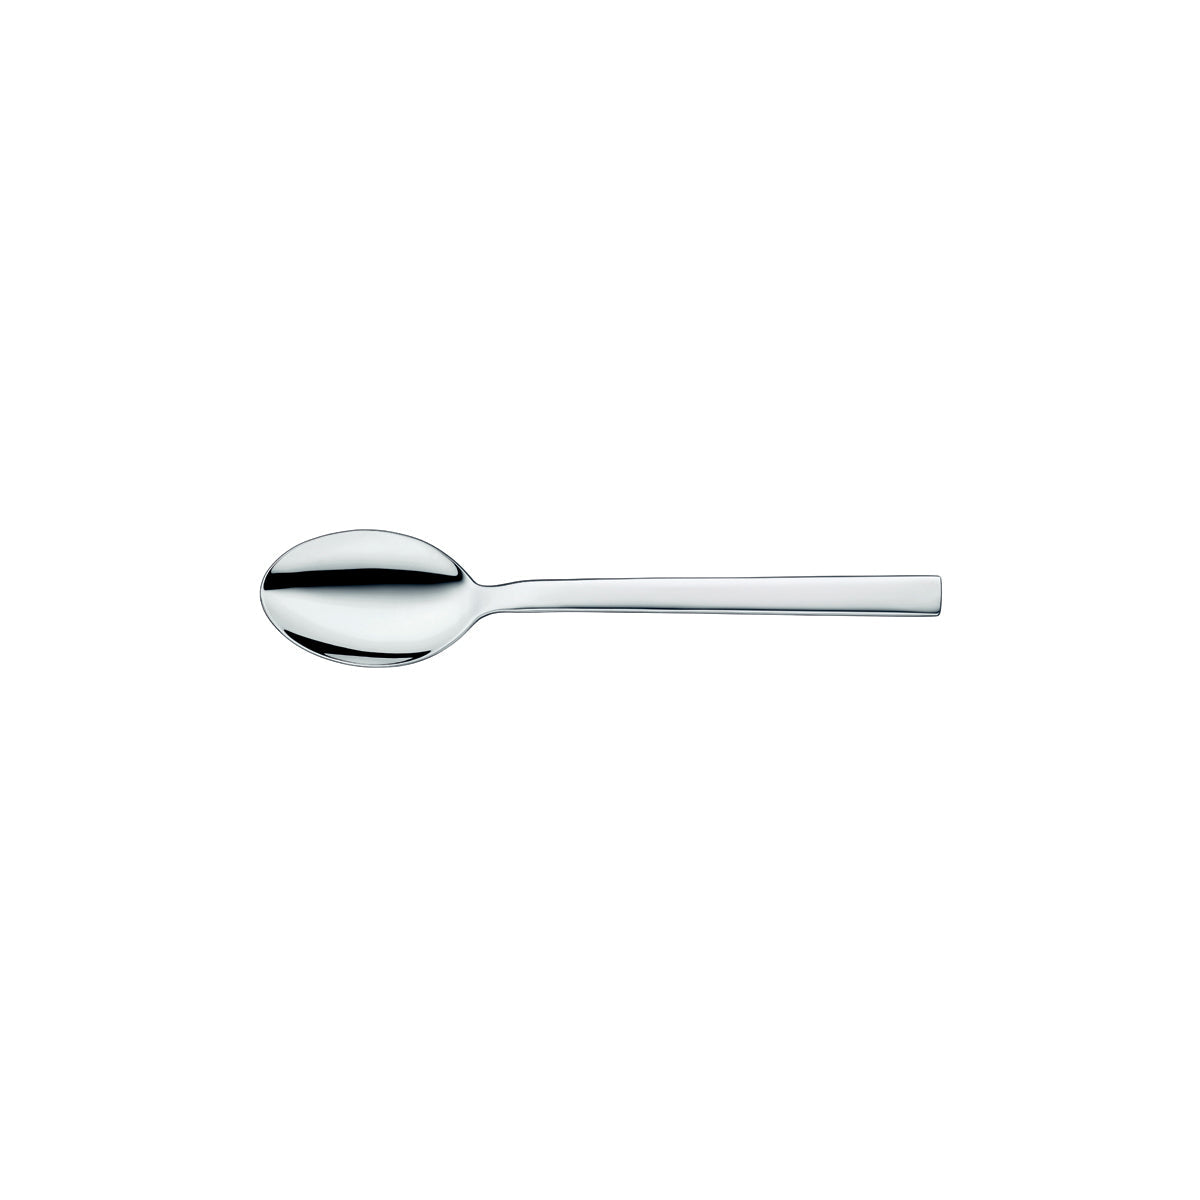 12.5301.6540 WMF Unic Table Spoon Chrome Tomkin Australia Hospitality Supplies